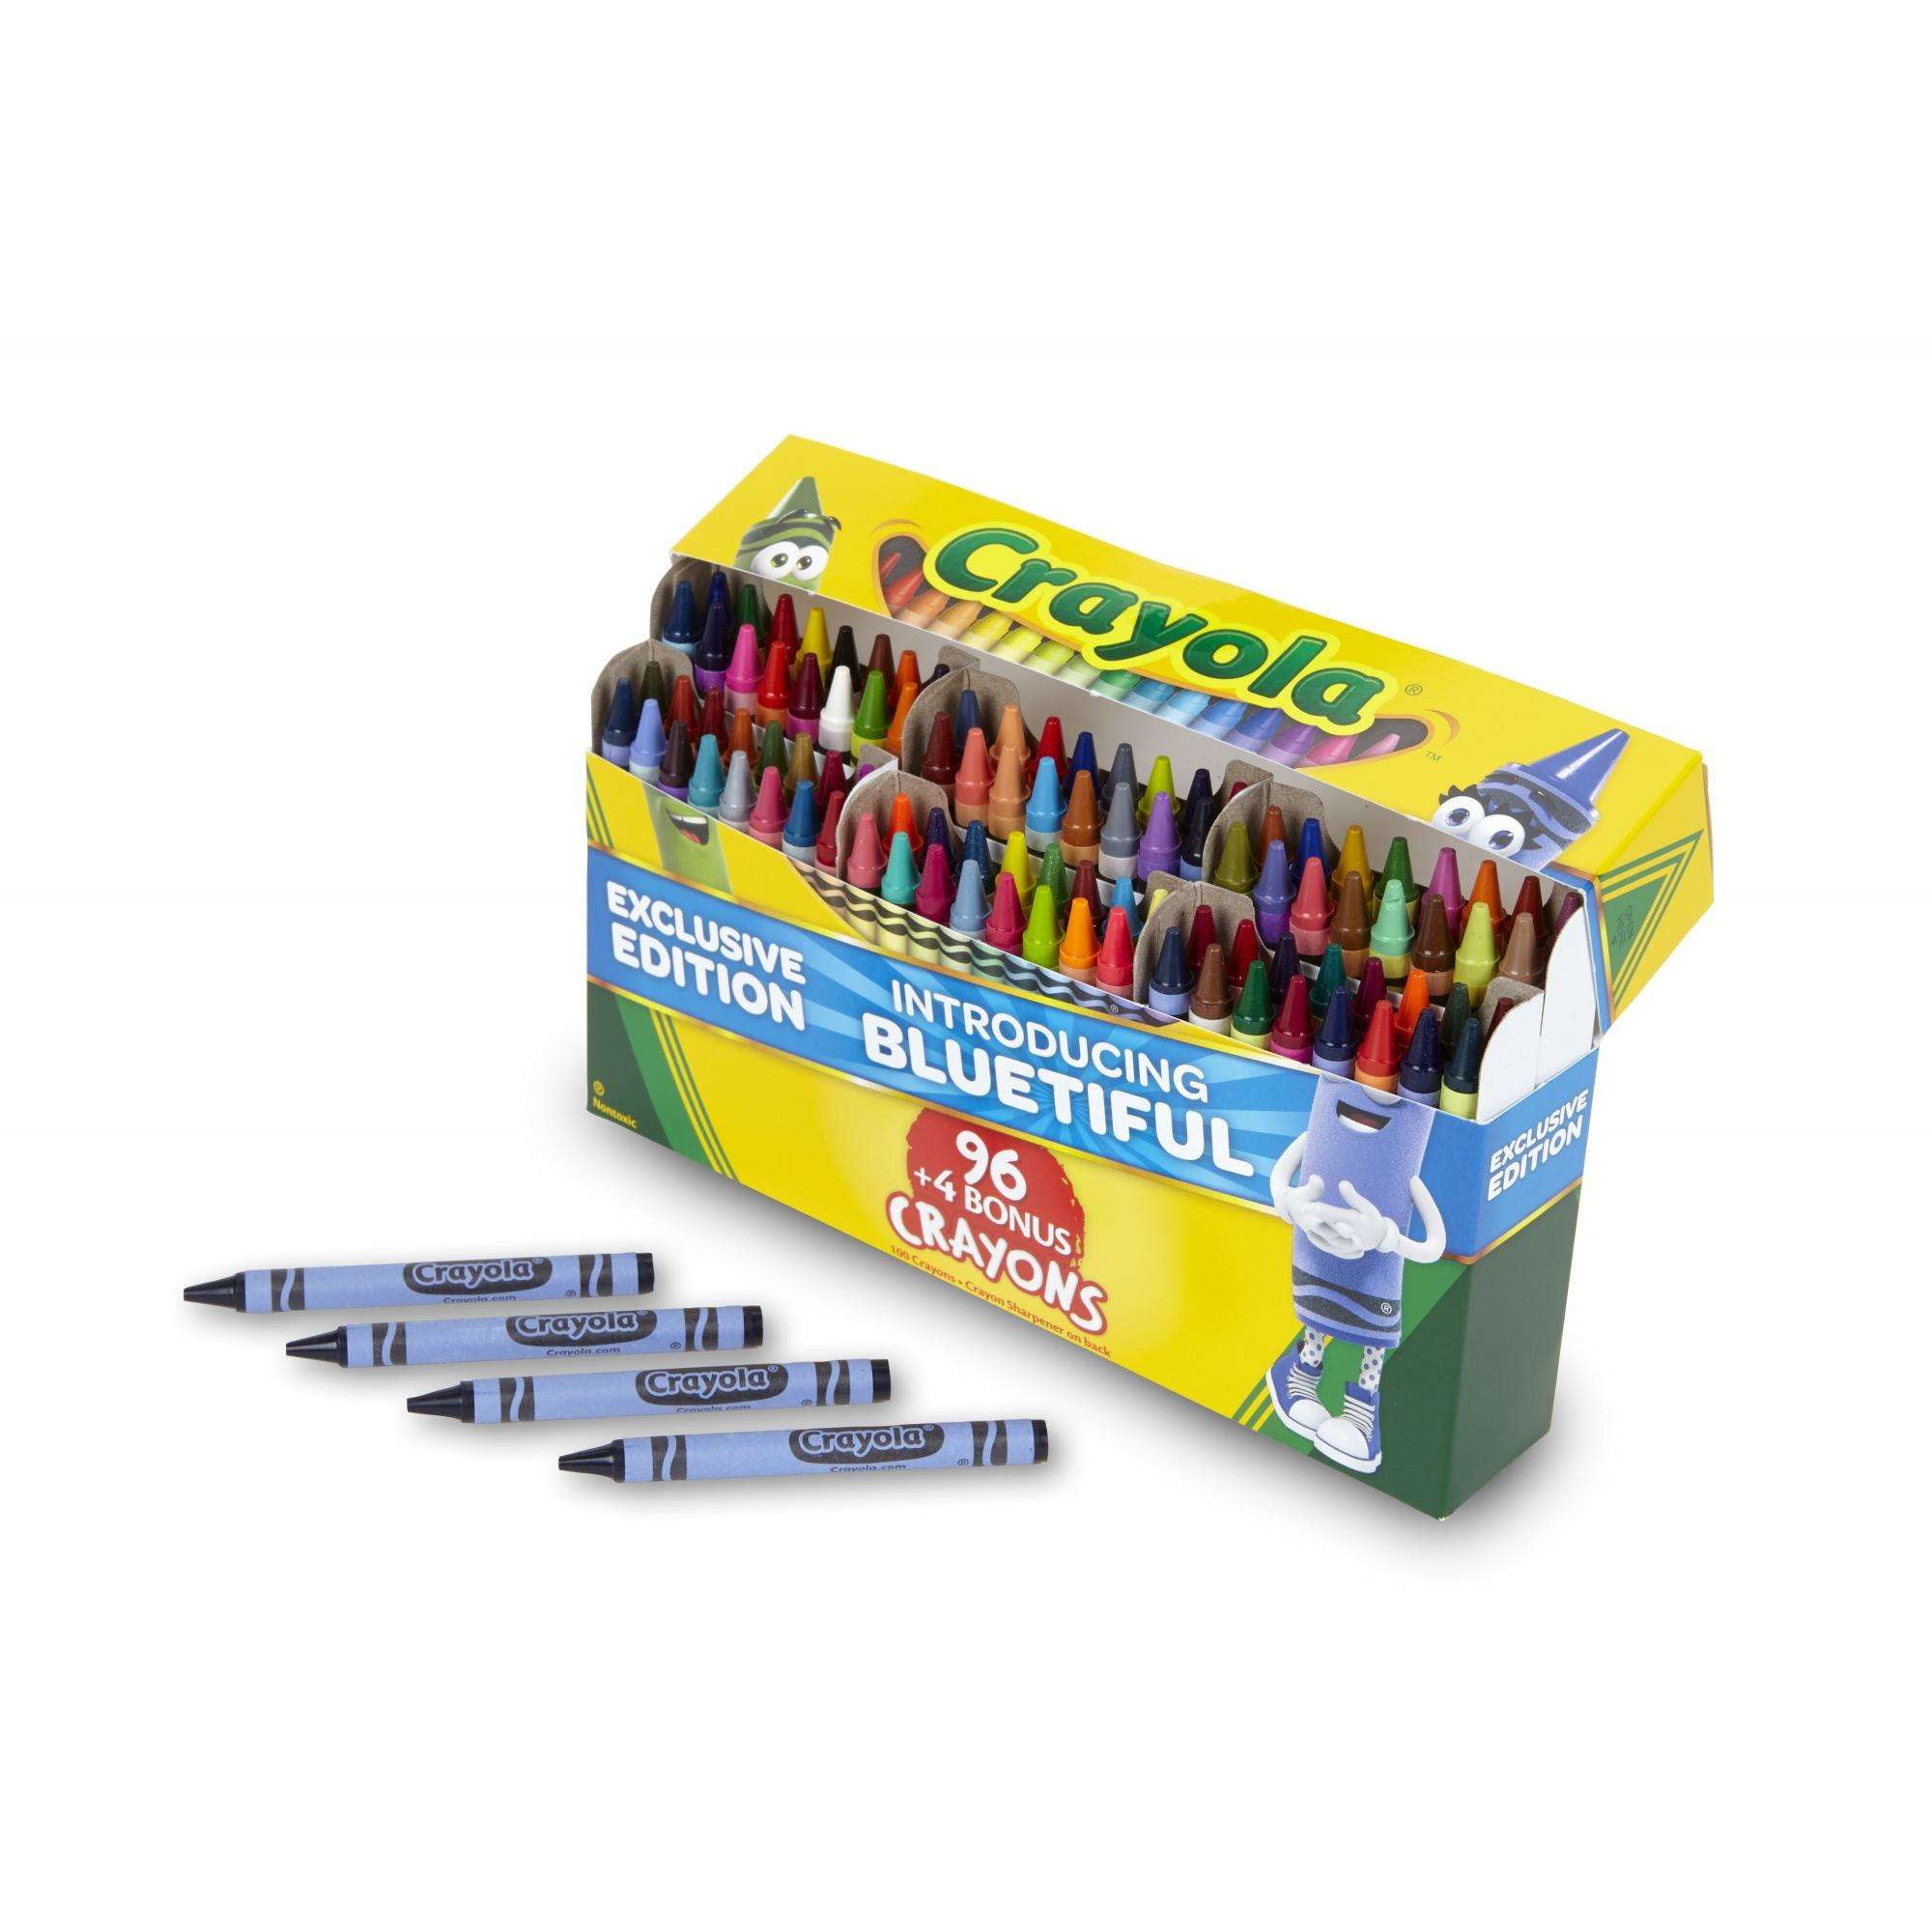 Crayola, ¿cuál es su nombre real, origen y qué tipos existen